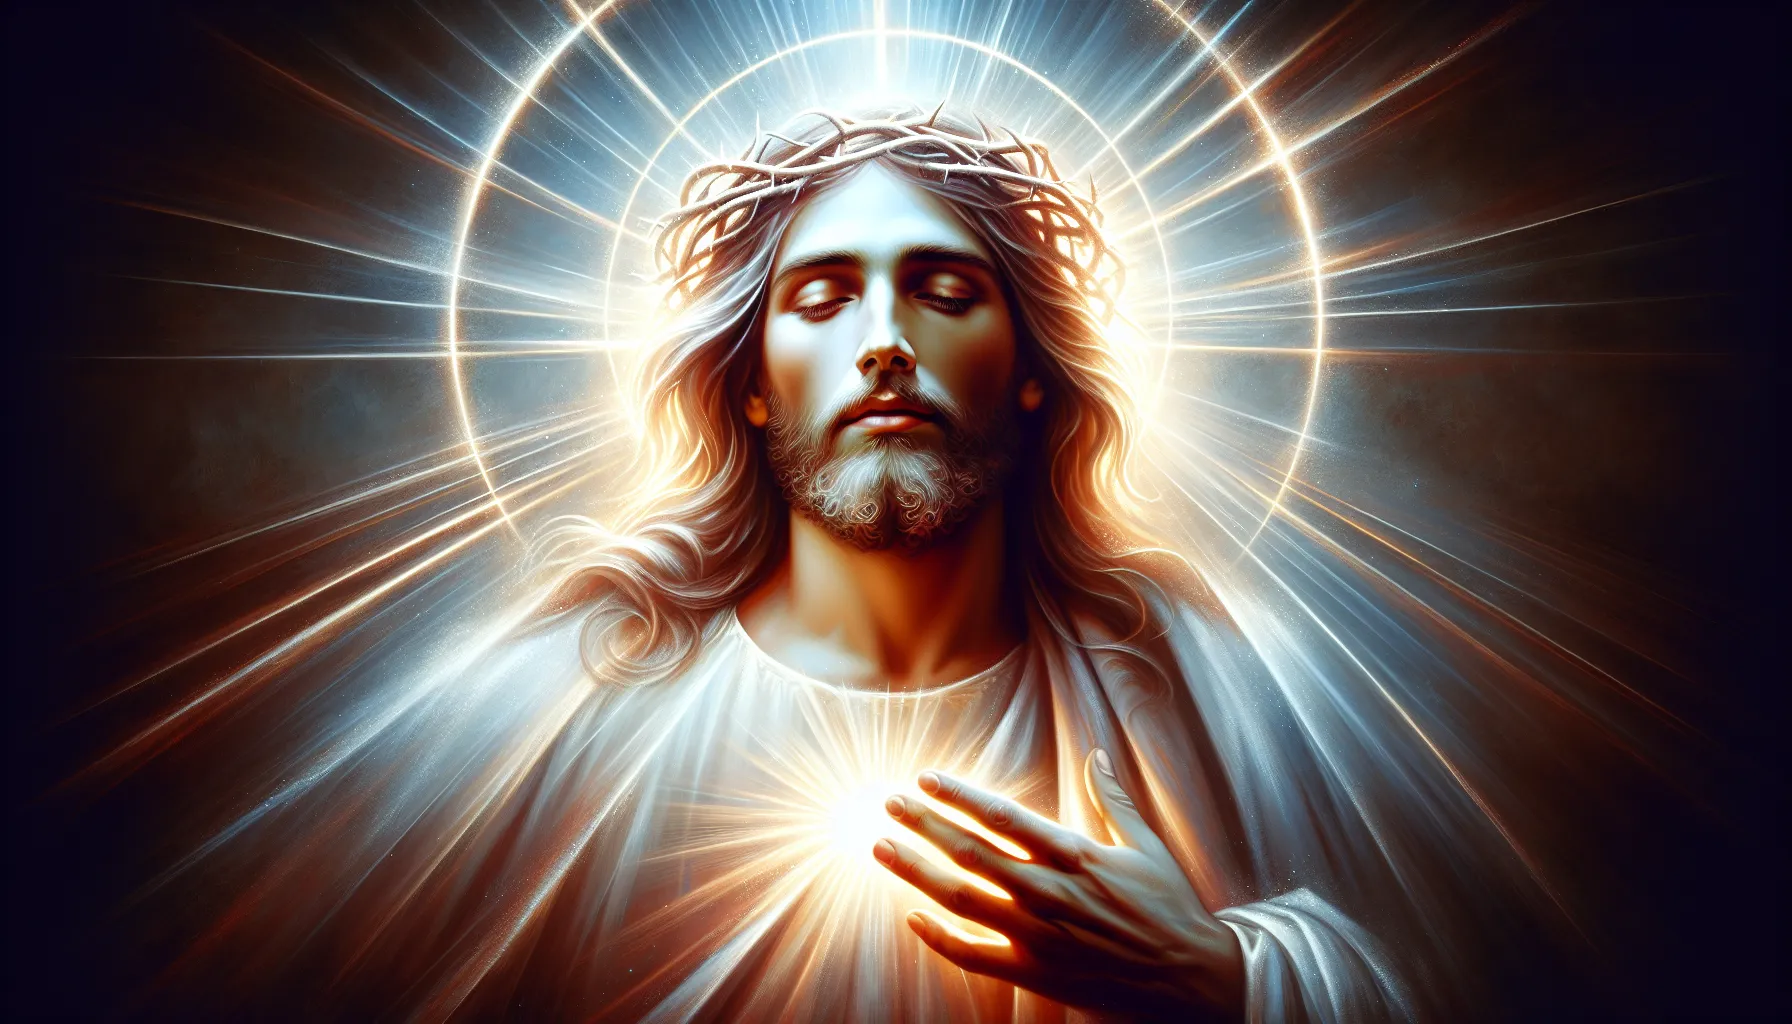 Imagen de una representación artística de Jesucristo como la Deidad en la fe cristiana